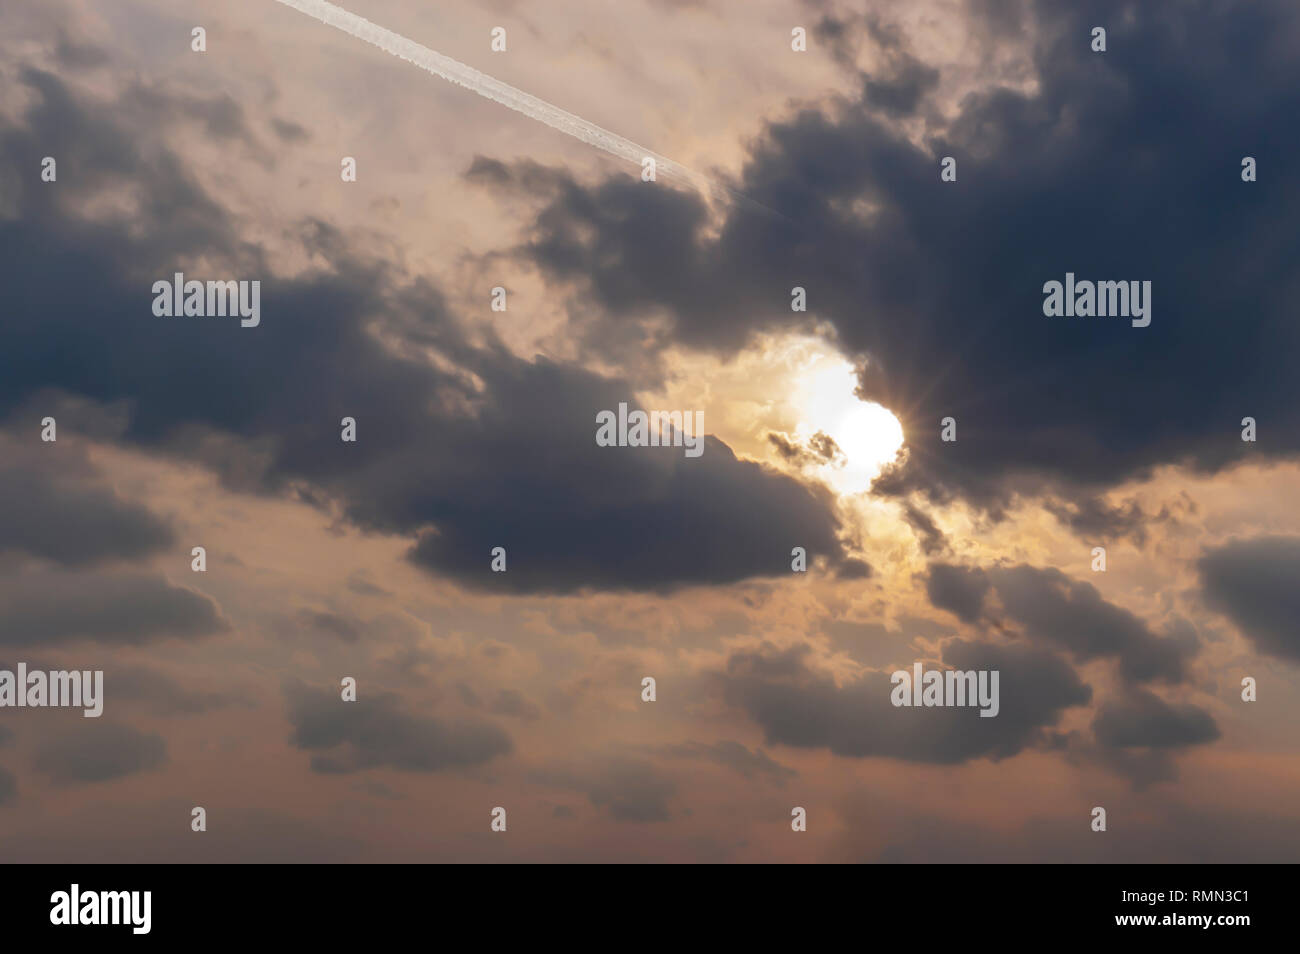 Ein jetliner, verlassen einen dicken Kondensstreifen, fliegt in eine Bank von Stratocumulus Wolken im Himmel. Starburst/Buddha Strahlen stammen aus einem teilweise verdeckten Sonne. Stockfoto